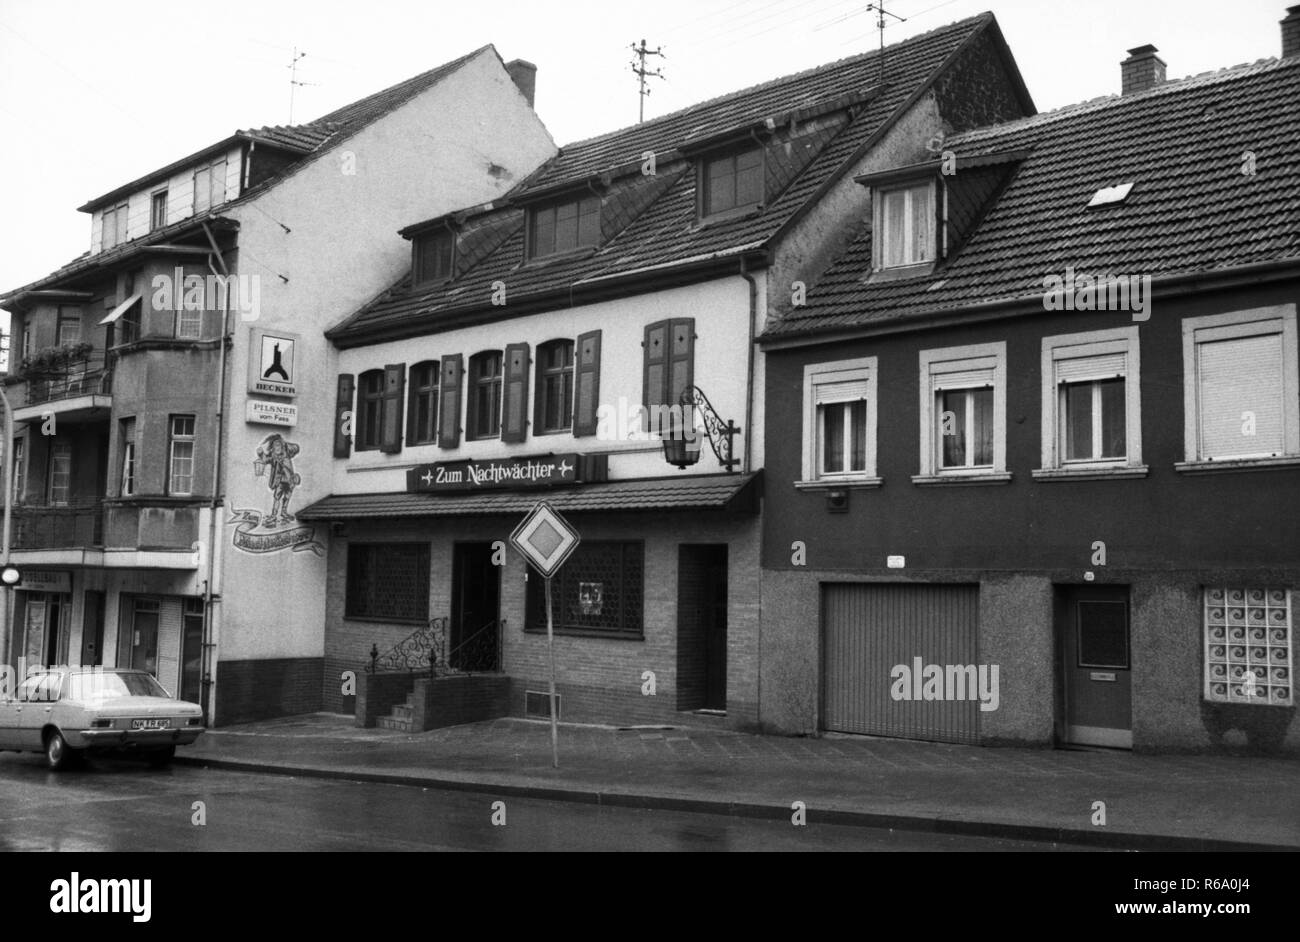 Die Stadt Neunkirchen am 2. August 1979. Geburtsort Erich Honecker (r). | Verwendung weltweit Stockfoto